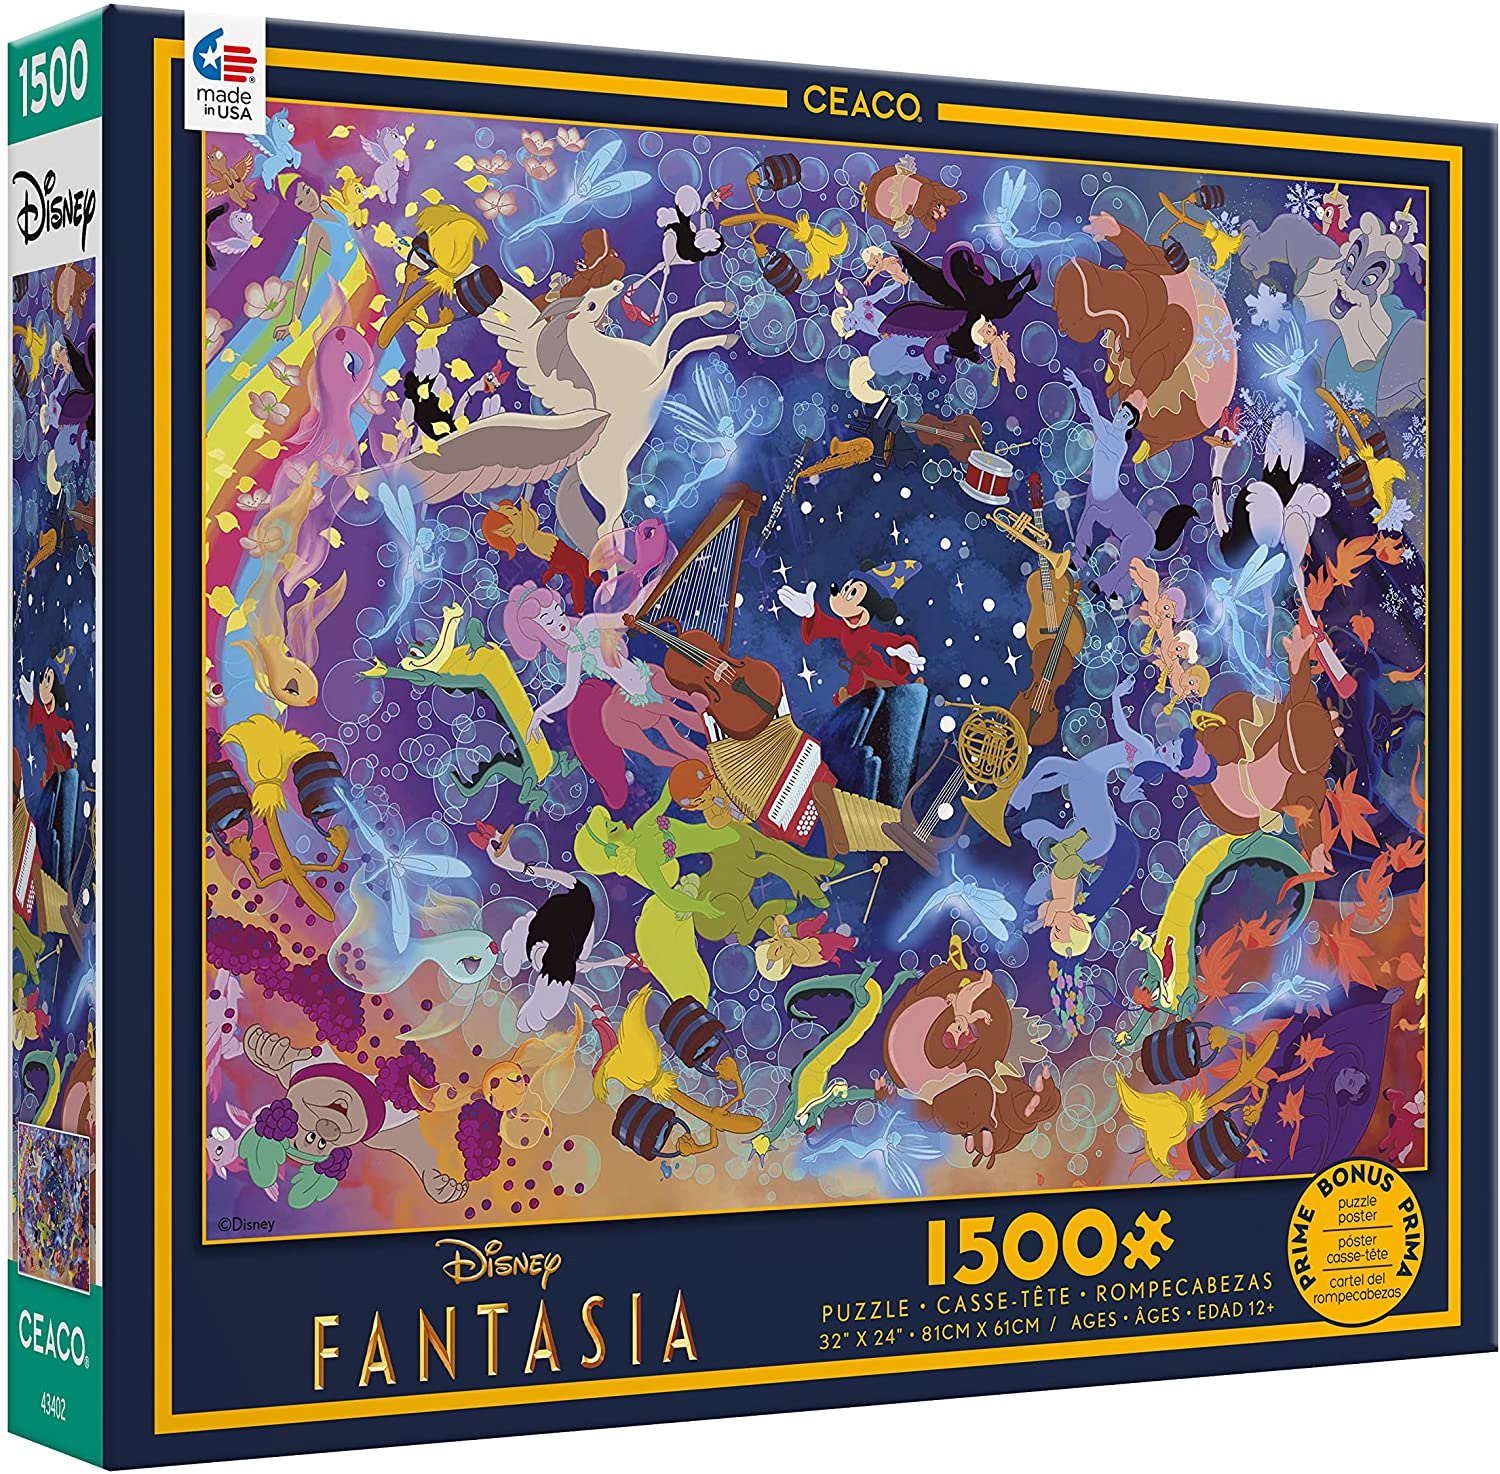 Puzzle 1500 Piezas | Disney Fantasia Ceaco